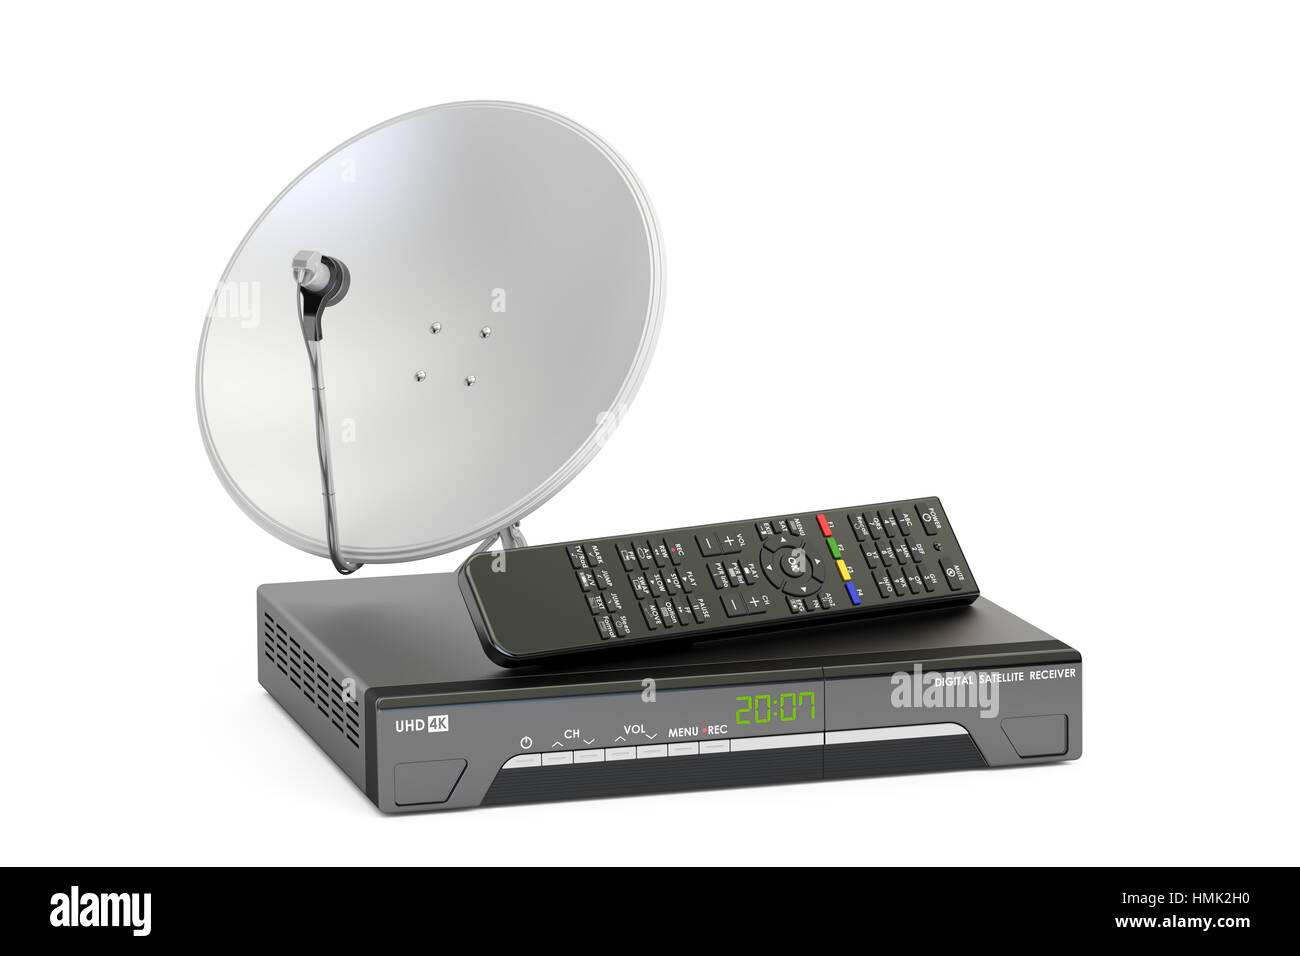  Receptores de TV por satélite - Equipo de satélite: Electrónica